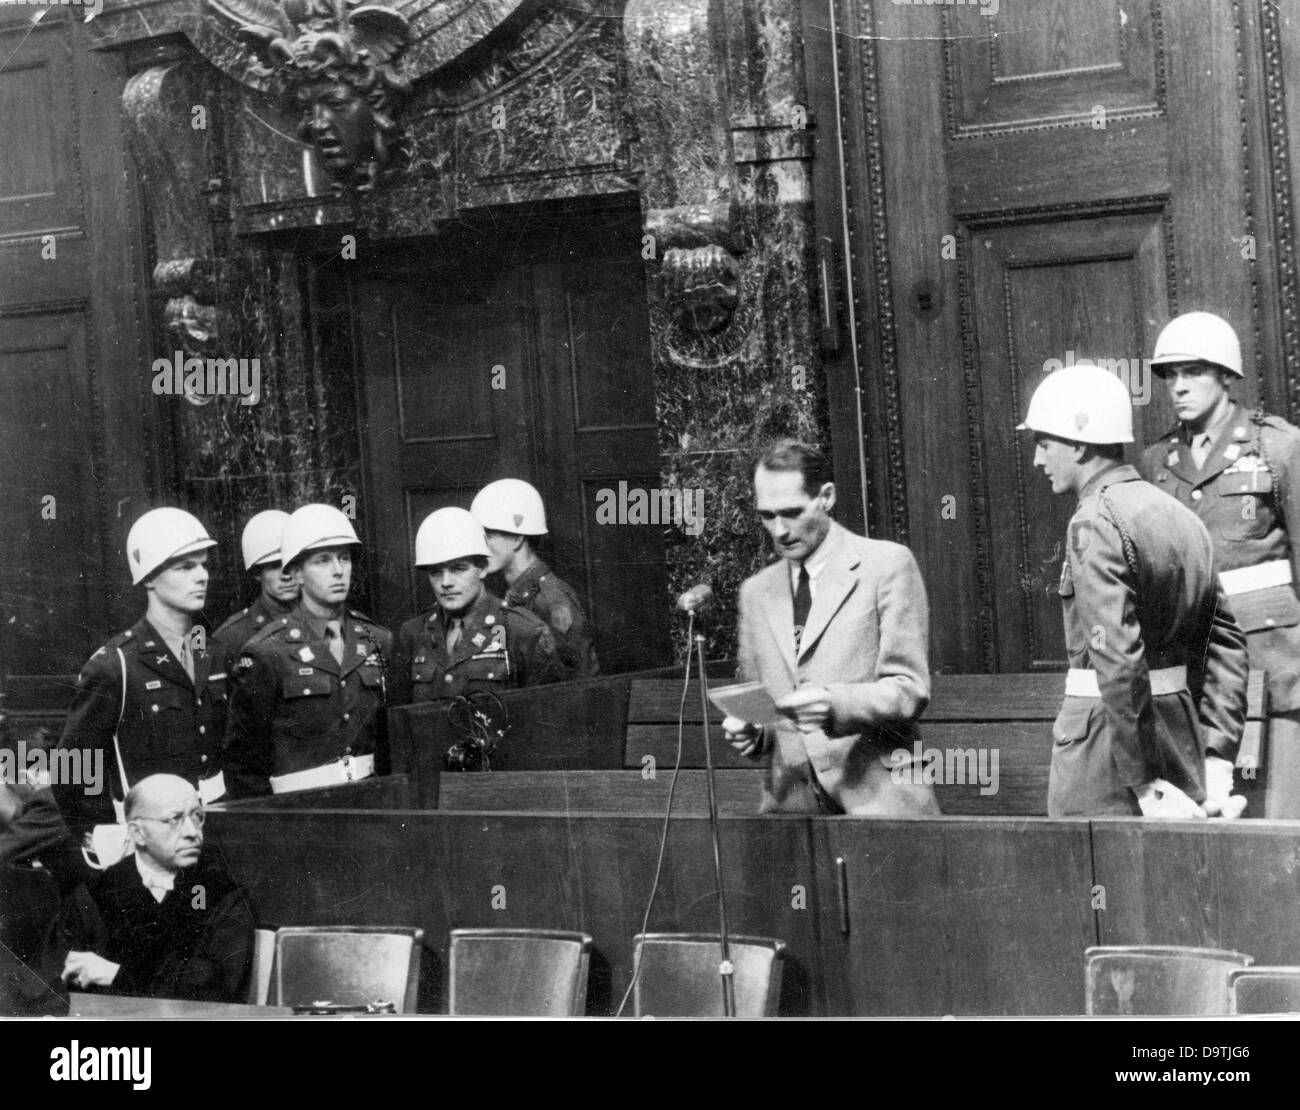 Rudolf Hess, un des principaux accusés comme criminel de guerre du régime nazi, lit à voix haute un document à la Cour de justice militaire international de Nuremberg en 1946. Photo : Yevgeny Khaldei Banque D'Images